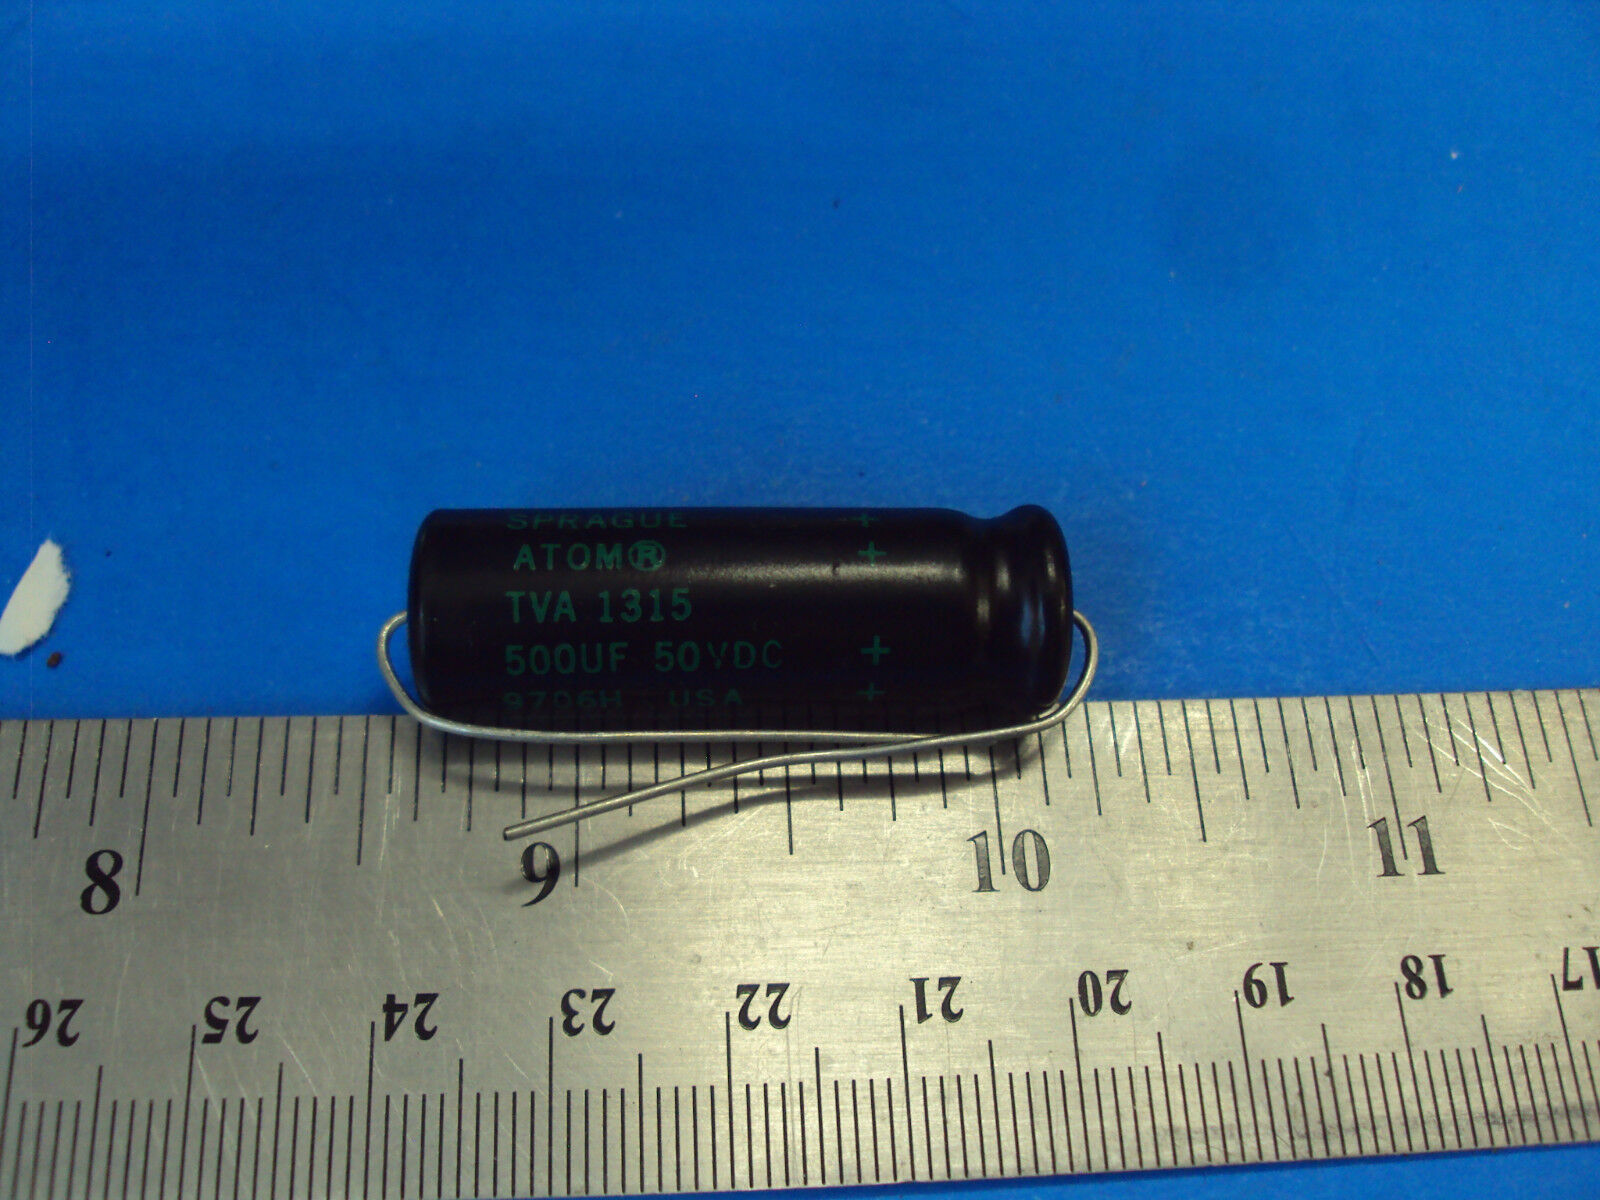 8E 1-PCS TVA-1315 Capacitor Sprague Atom 500uf 50V Tube Amp Made in USA 